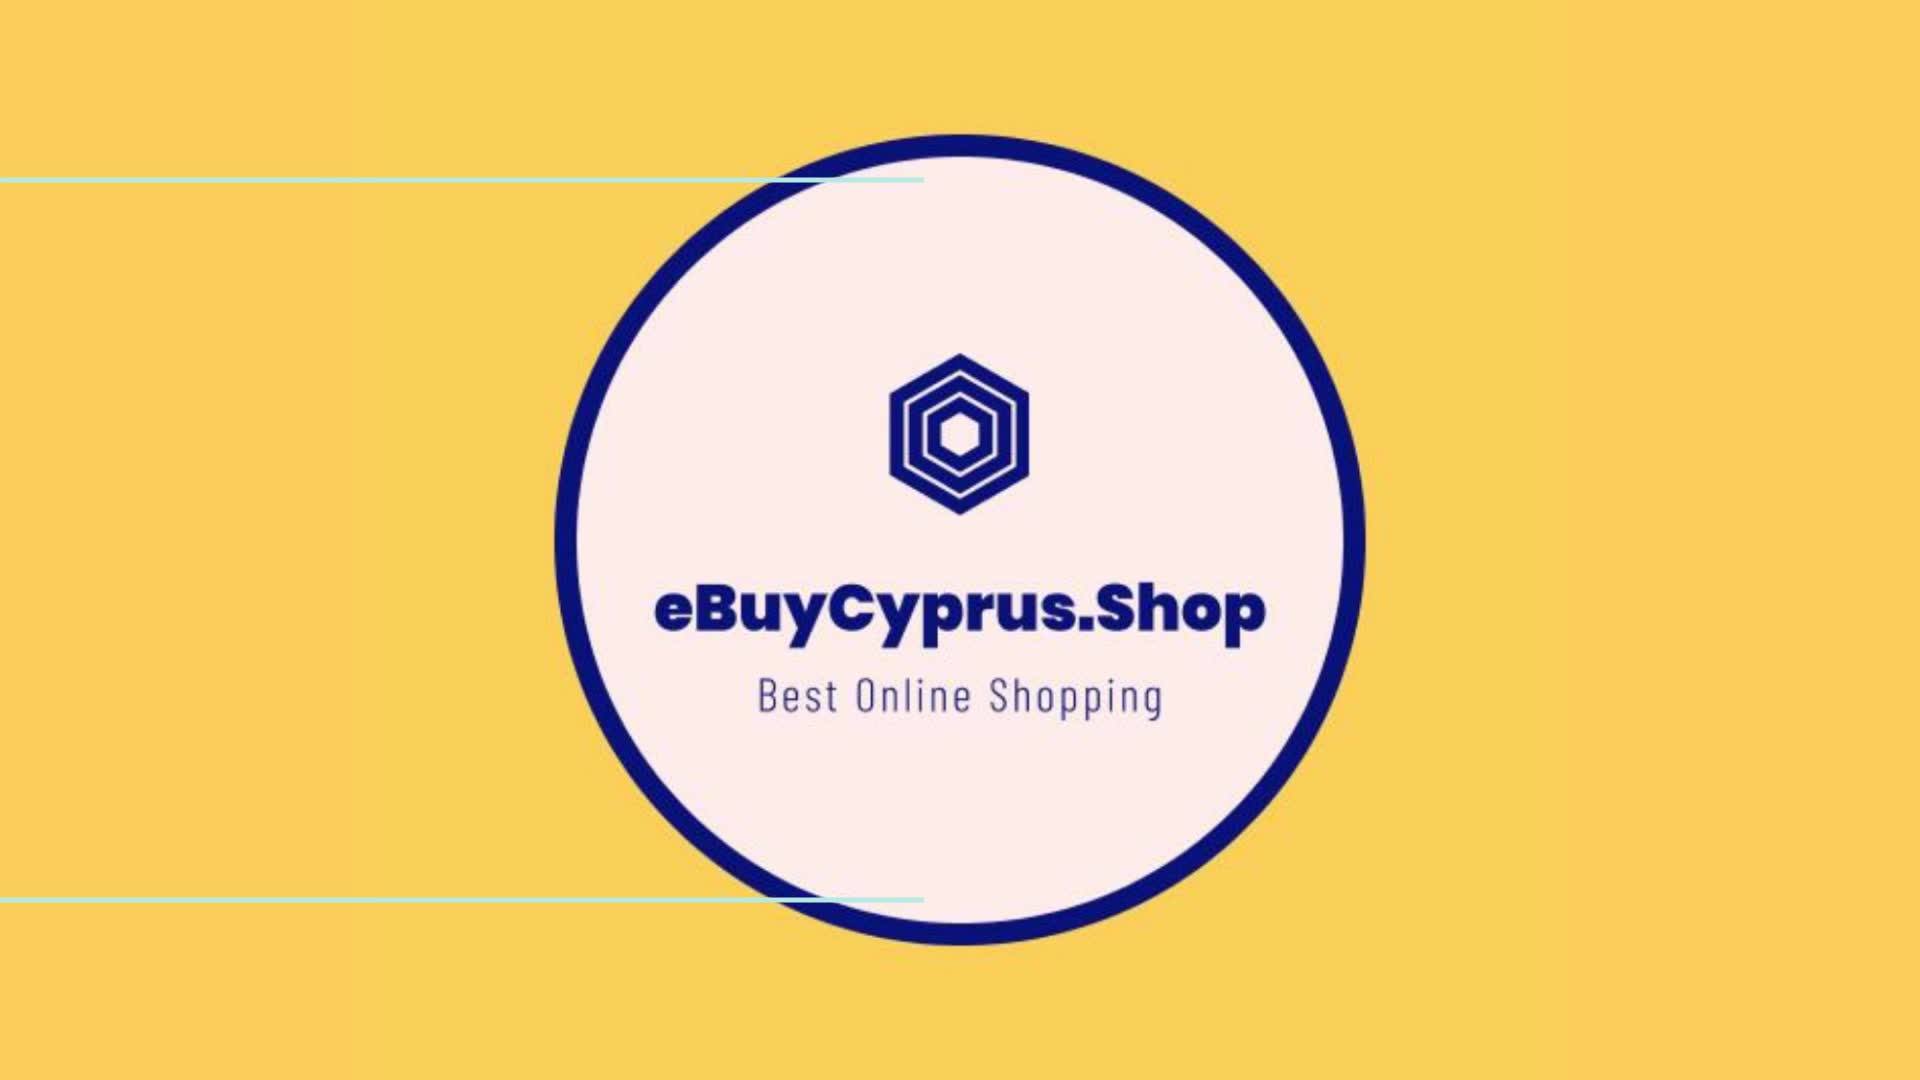 eBuyCyprus.Shop